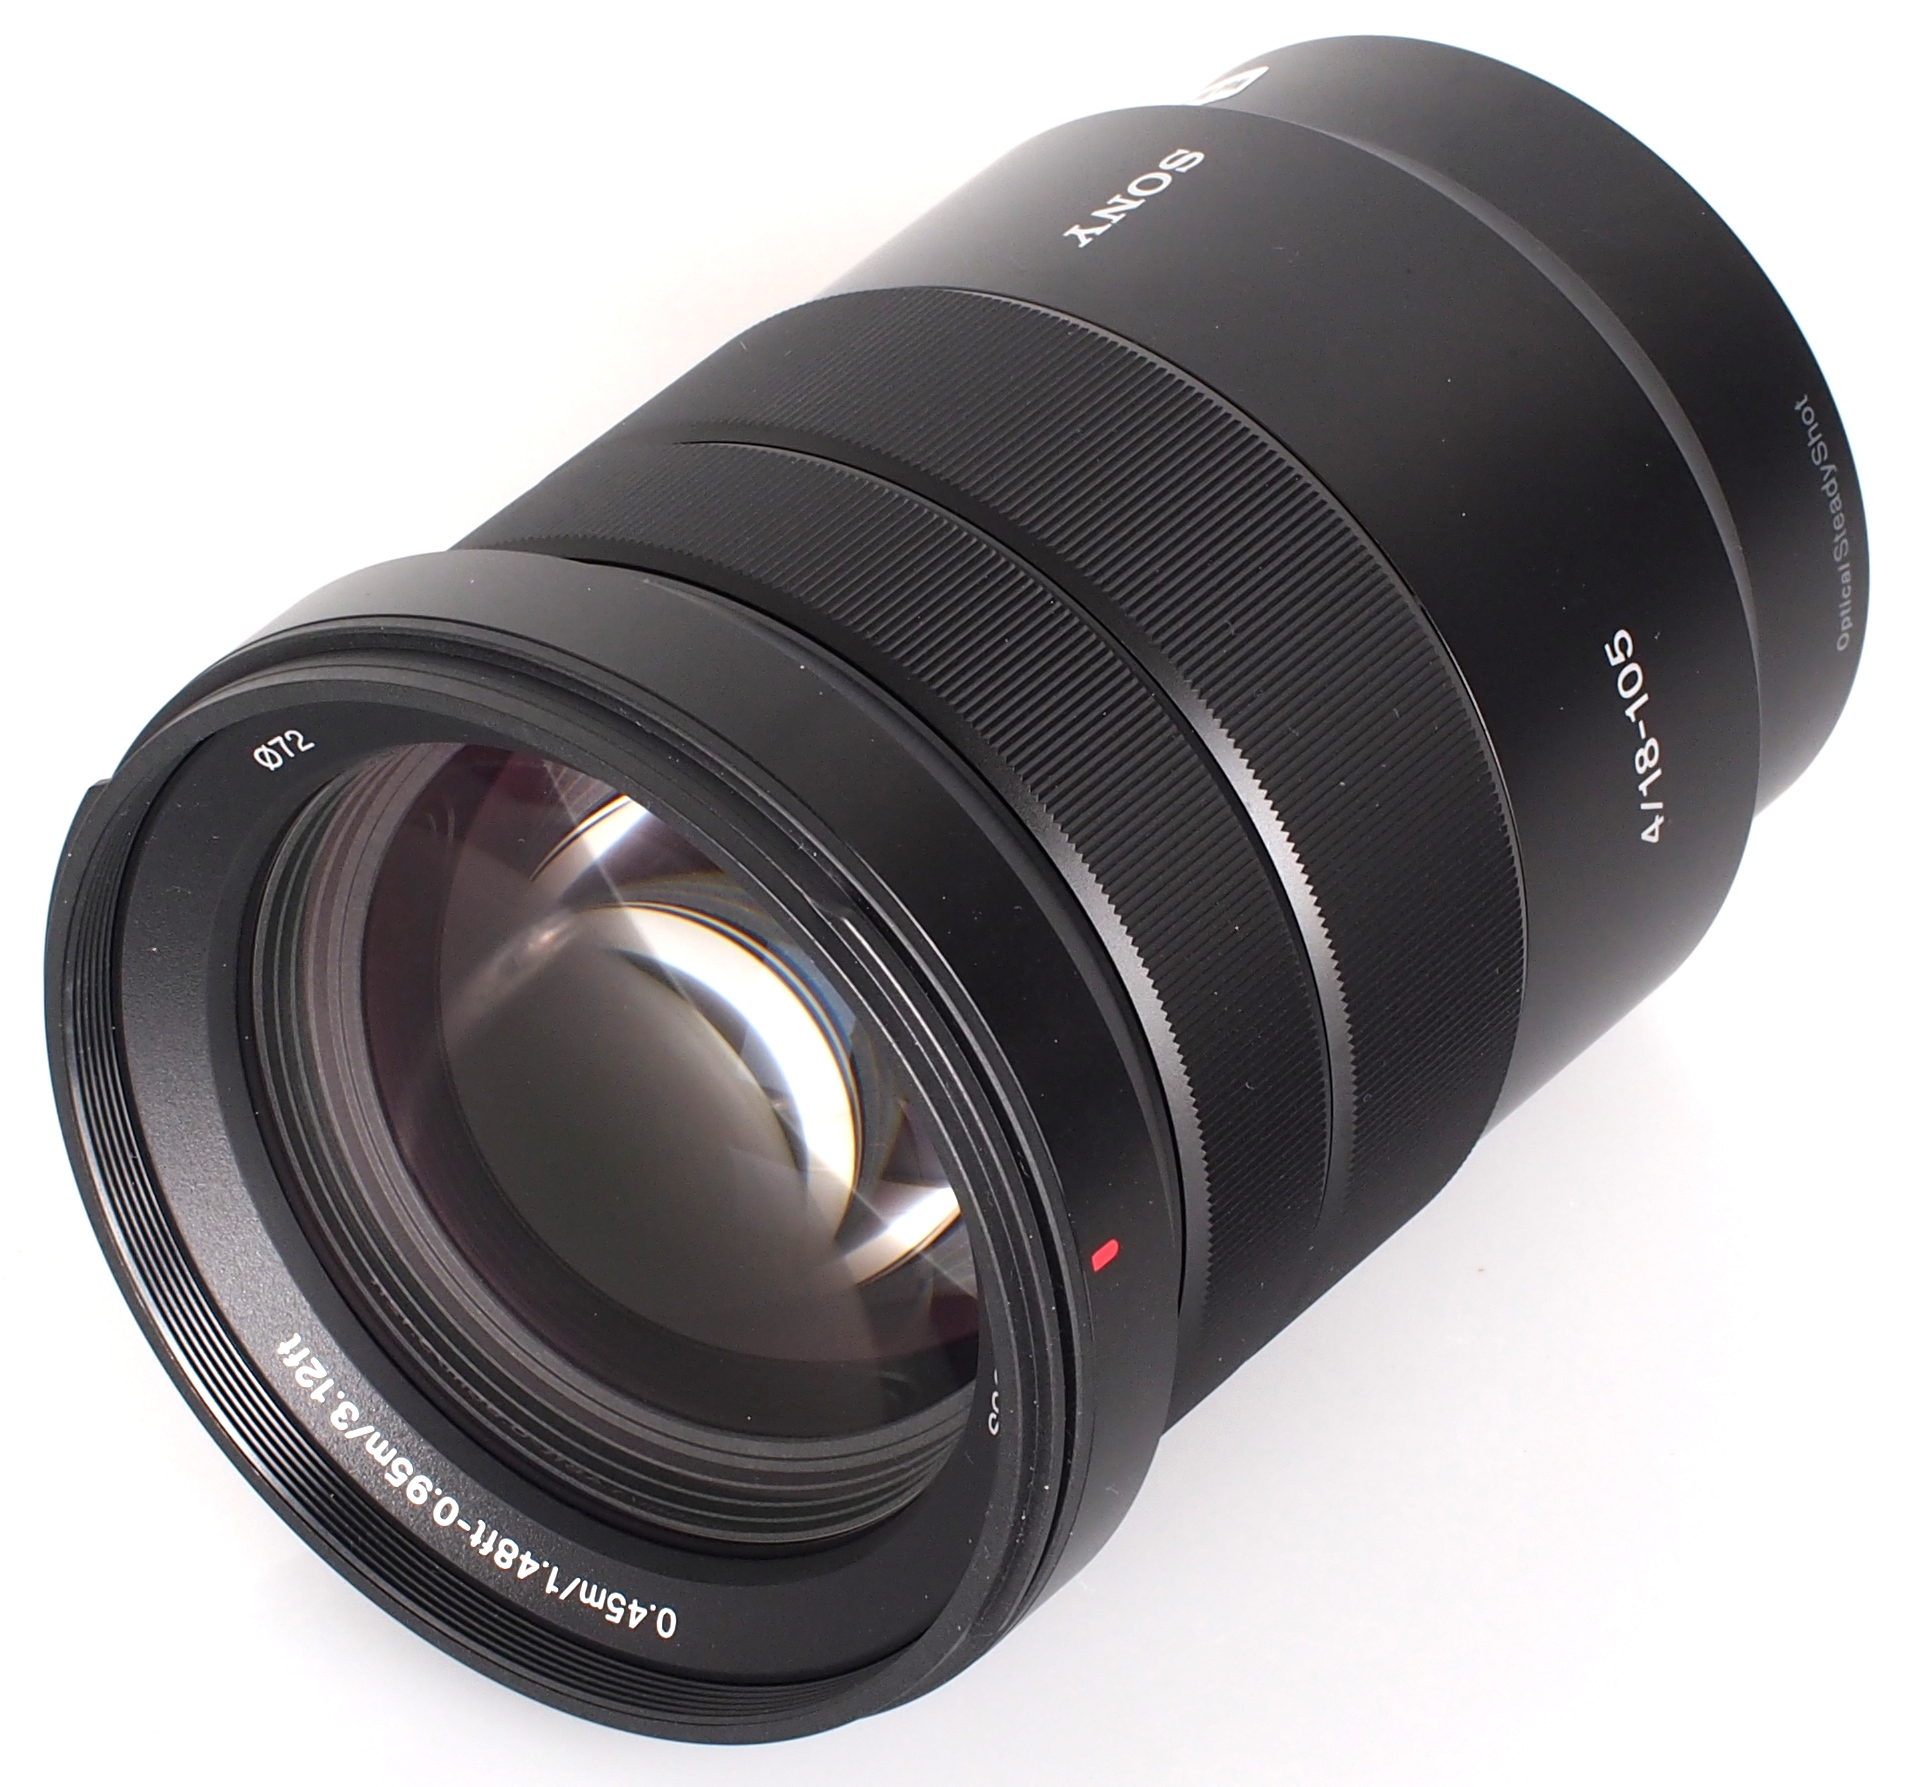 Sony E 18105mm f/4 PZ G OSS Lens Review